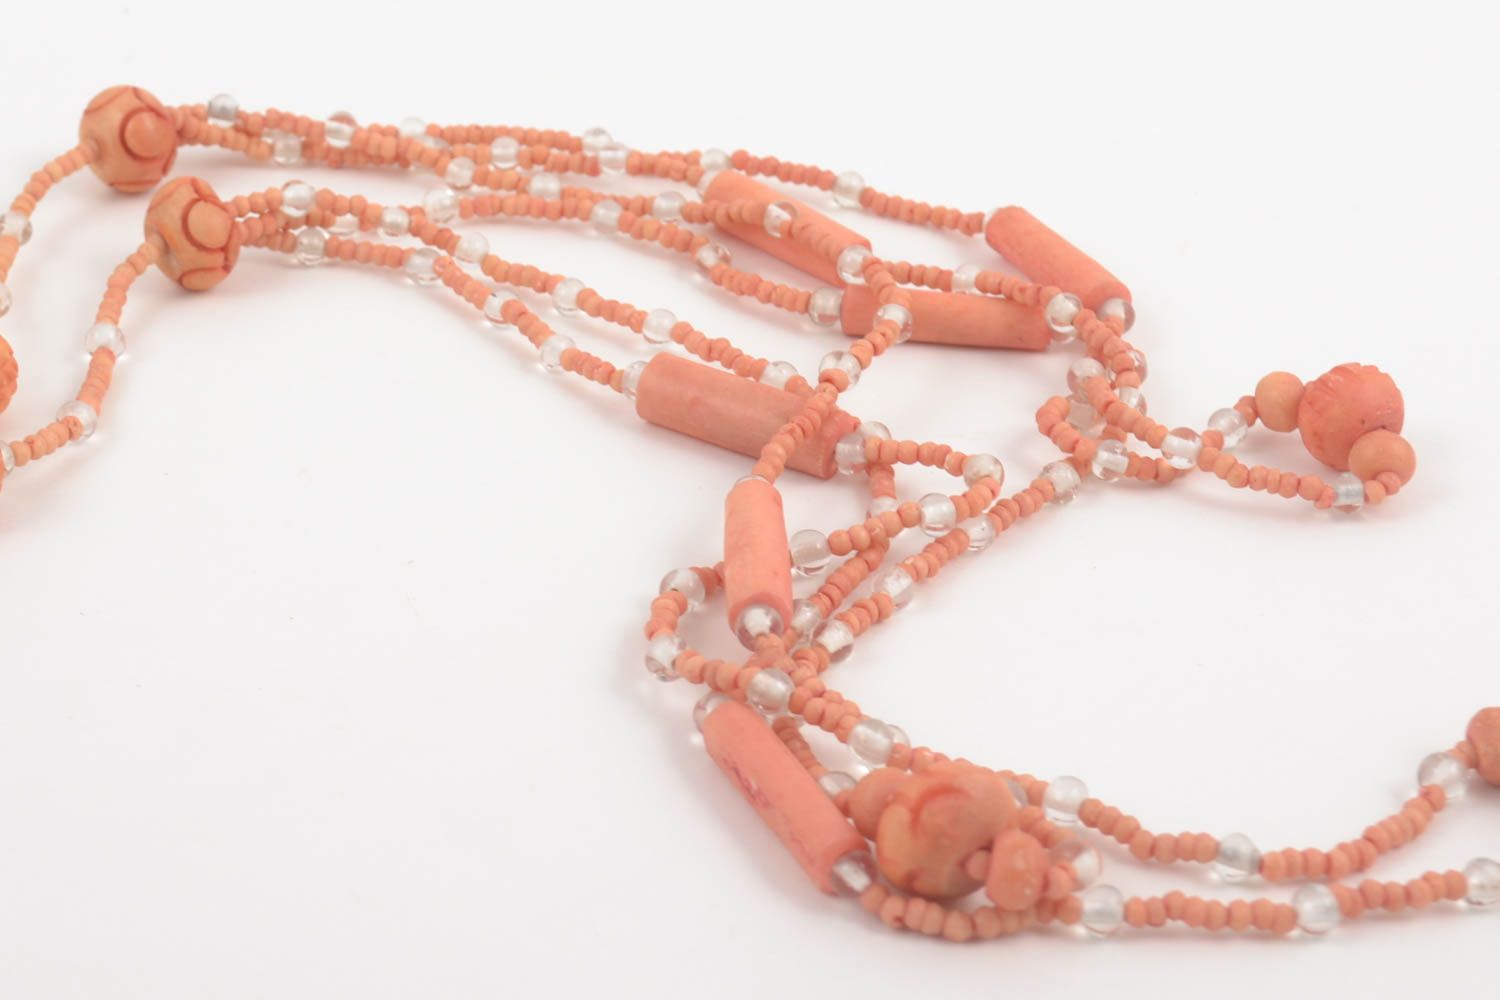 Handmade beaded necklace bone necklace bone jewelry fashion jewelry for girls photo 4